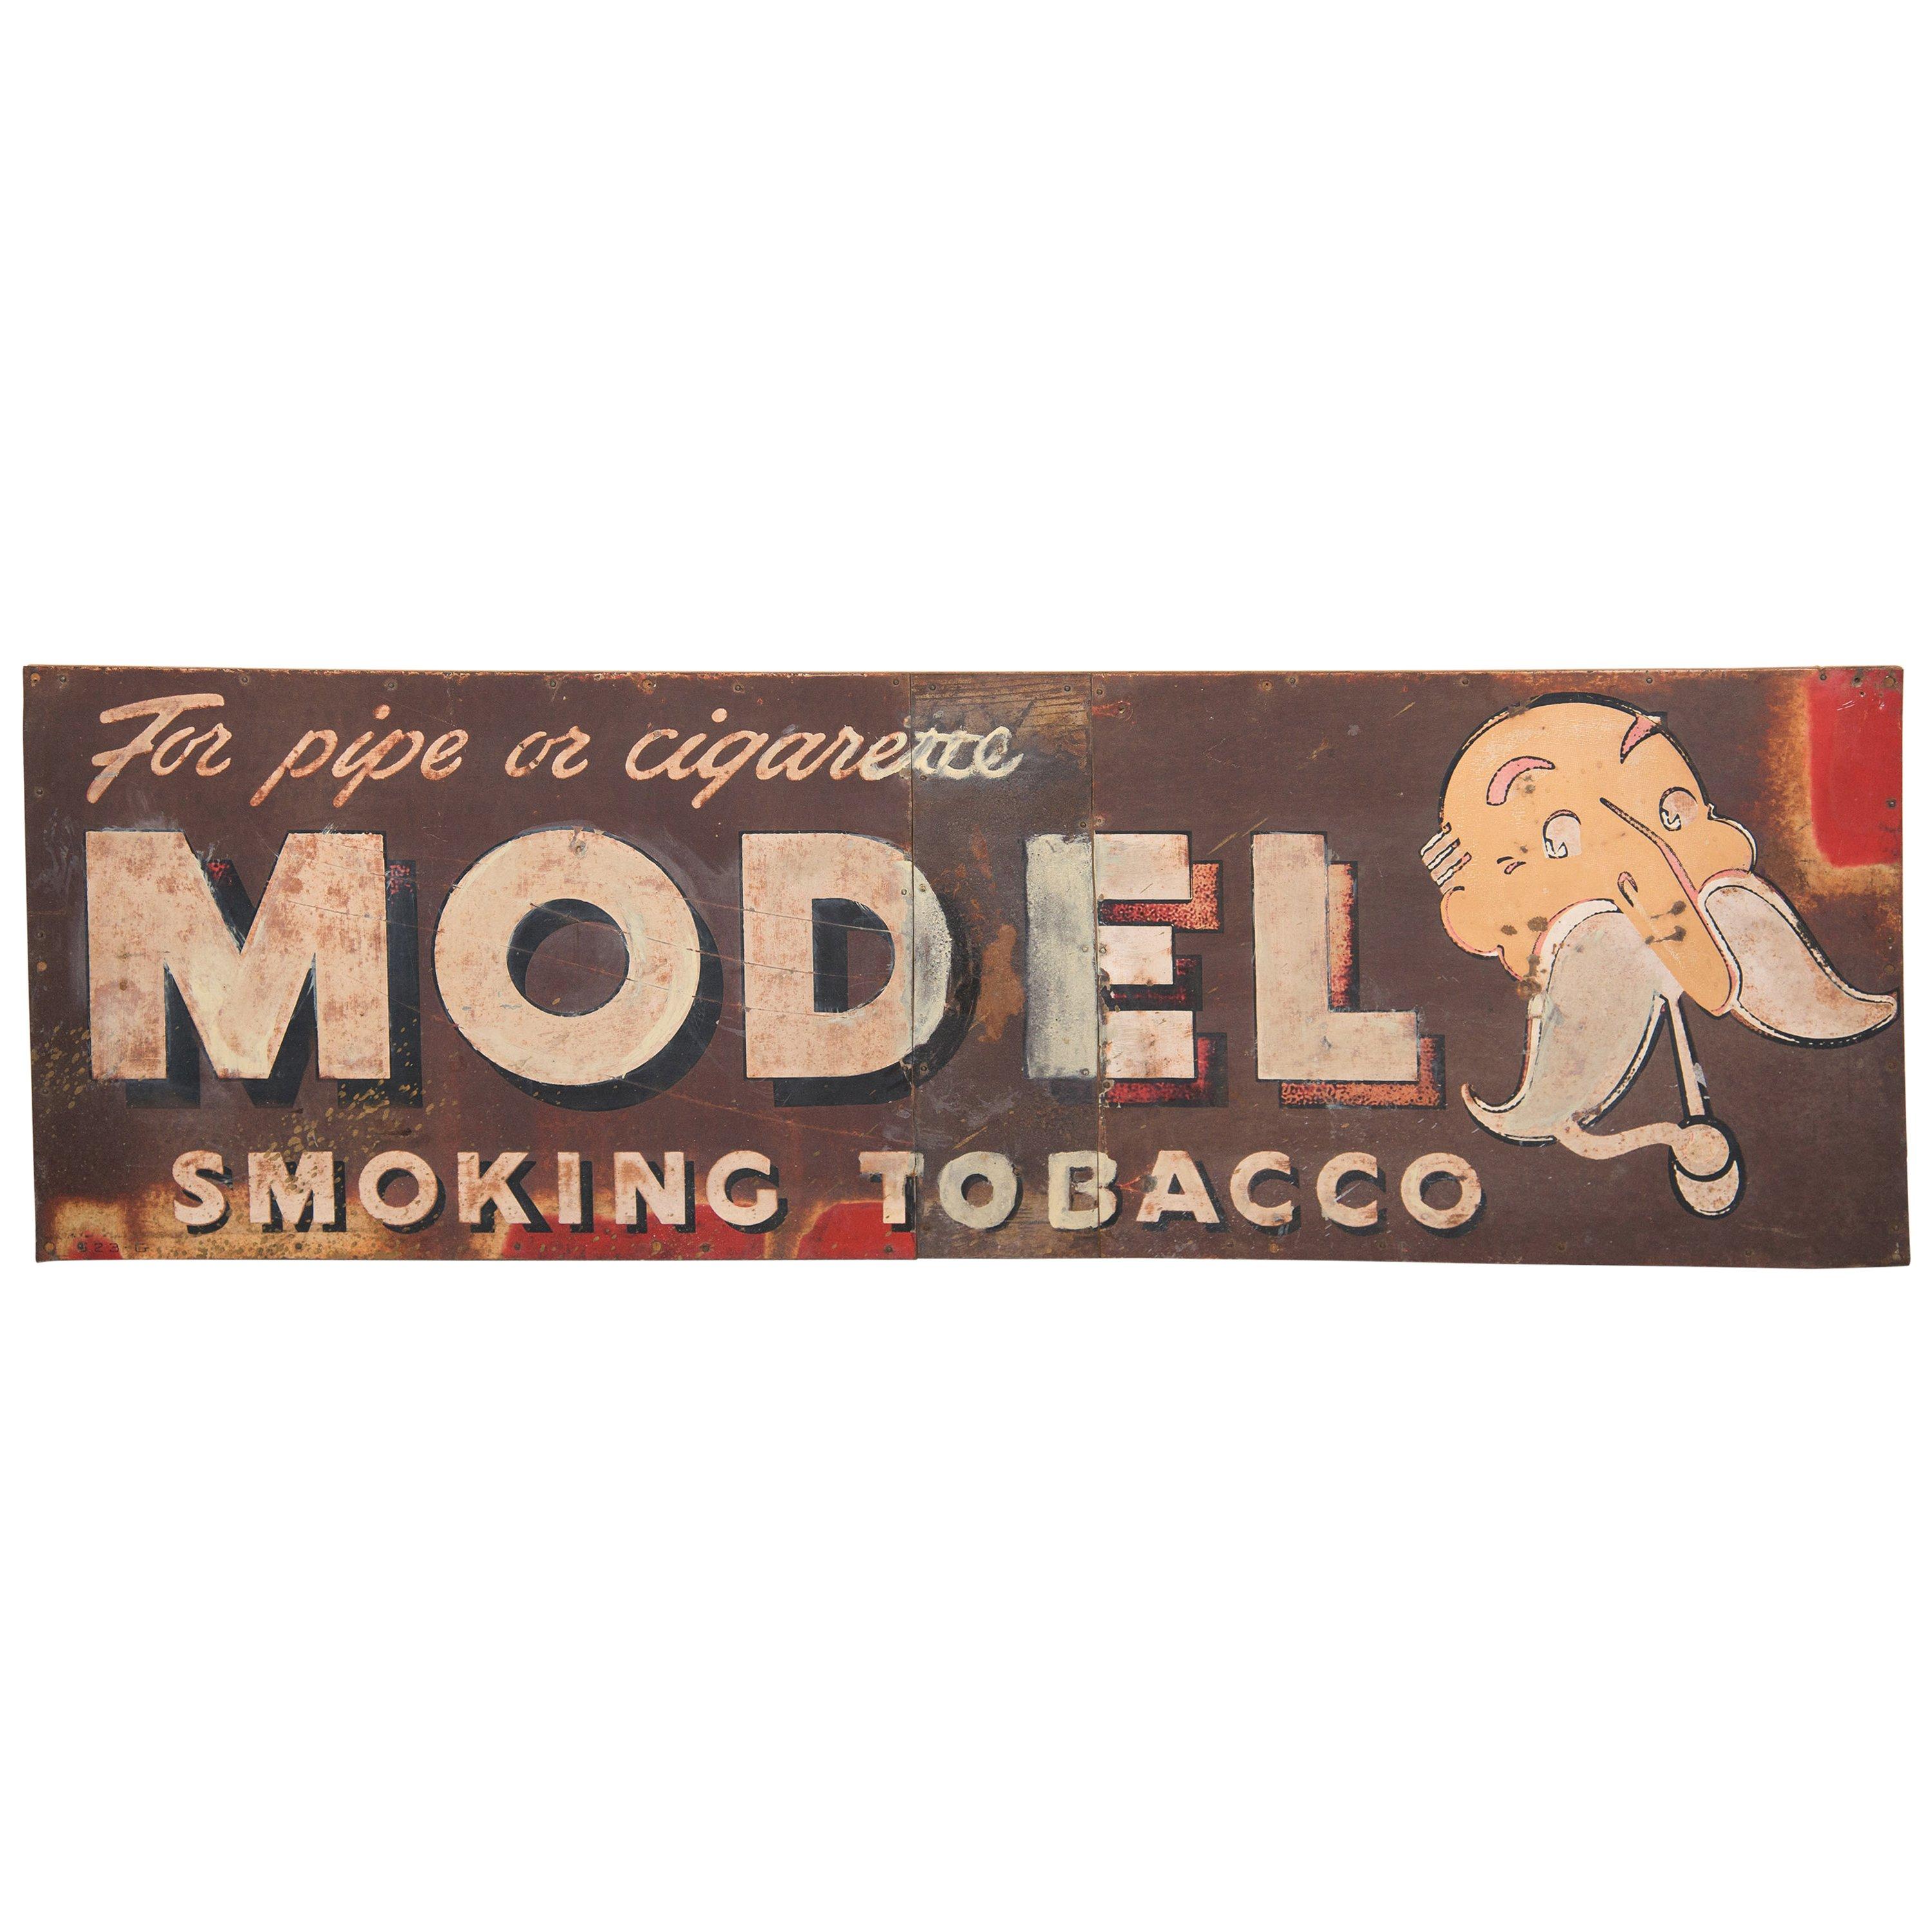 Handbemaltes Tabakschild aus den 1940er Jahren